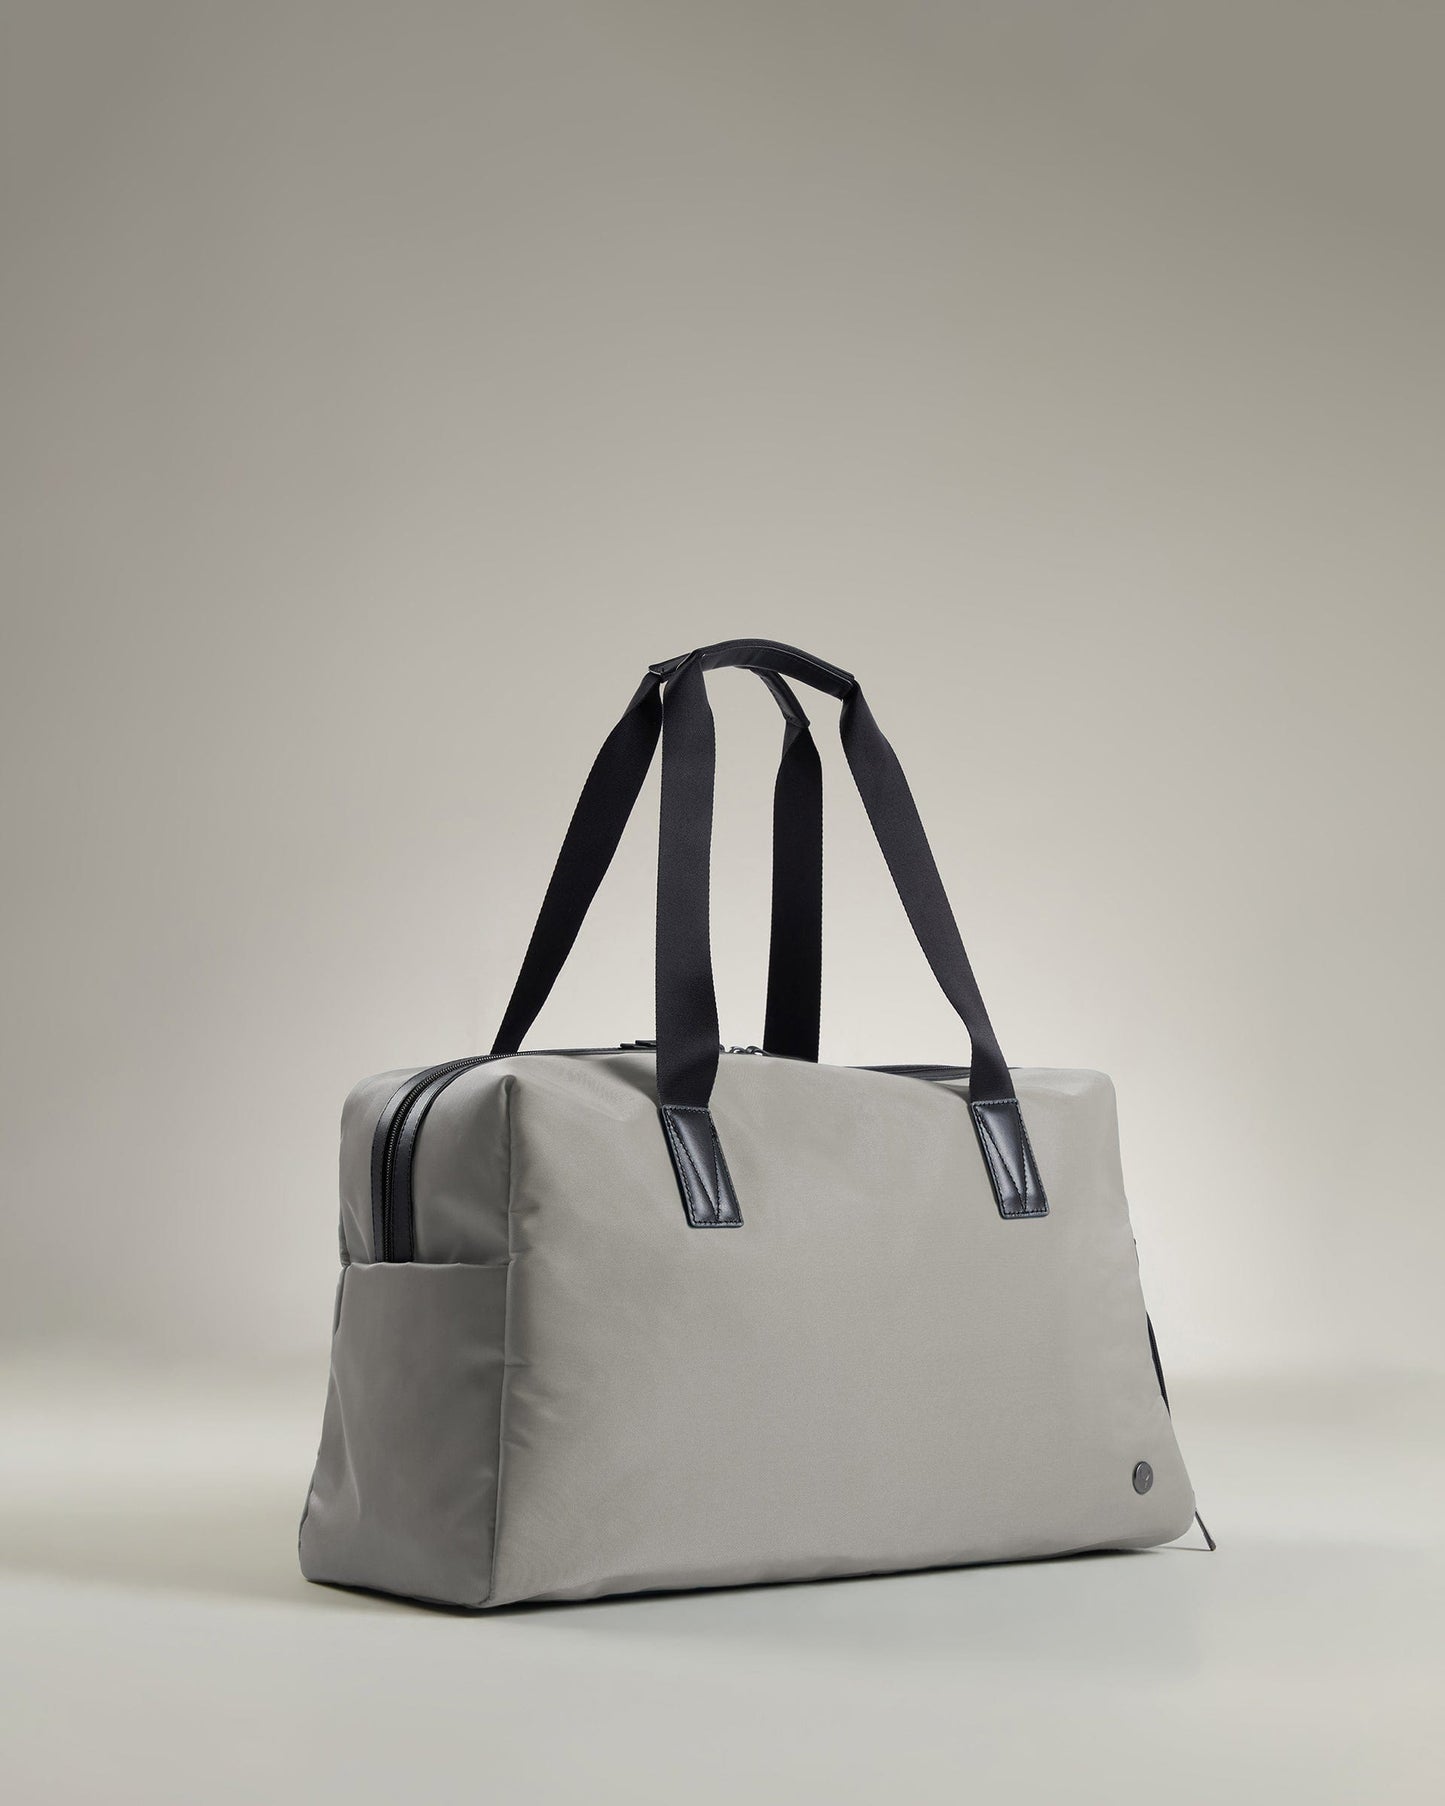 Antler Luggage -  Chelsea weekender in taupe - Weekend bags Chelsea Weekend Bag Taupe (Beige) | Travel Bags | Antler UK